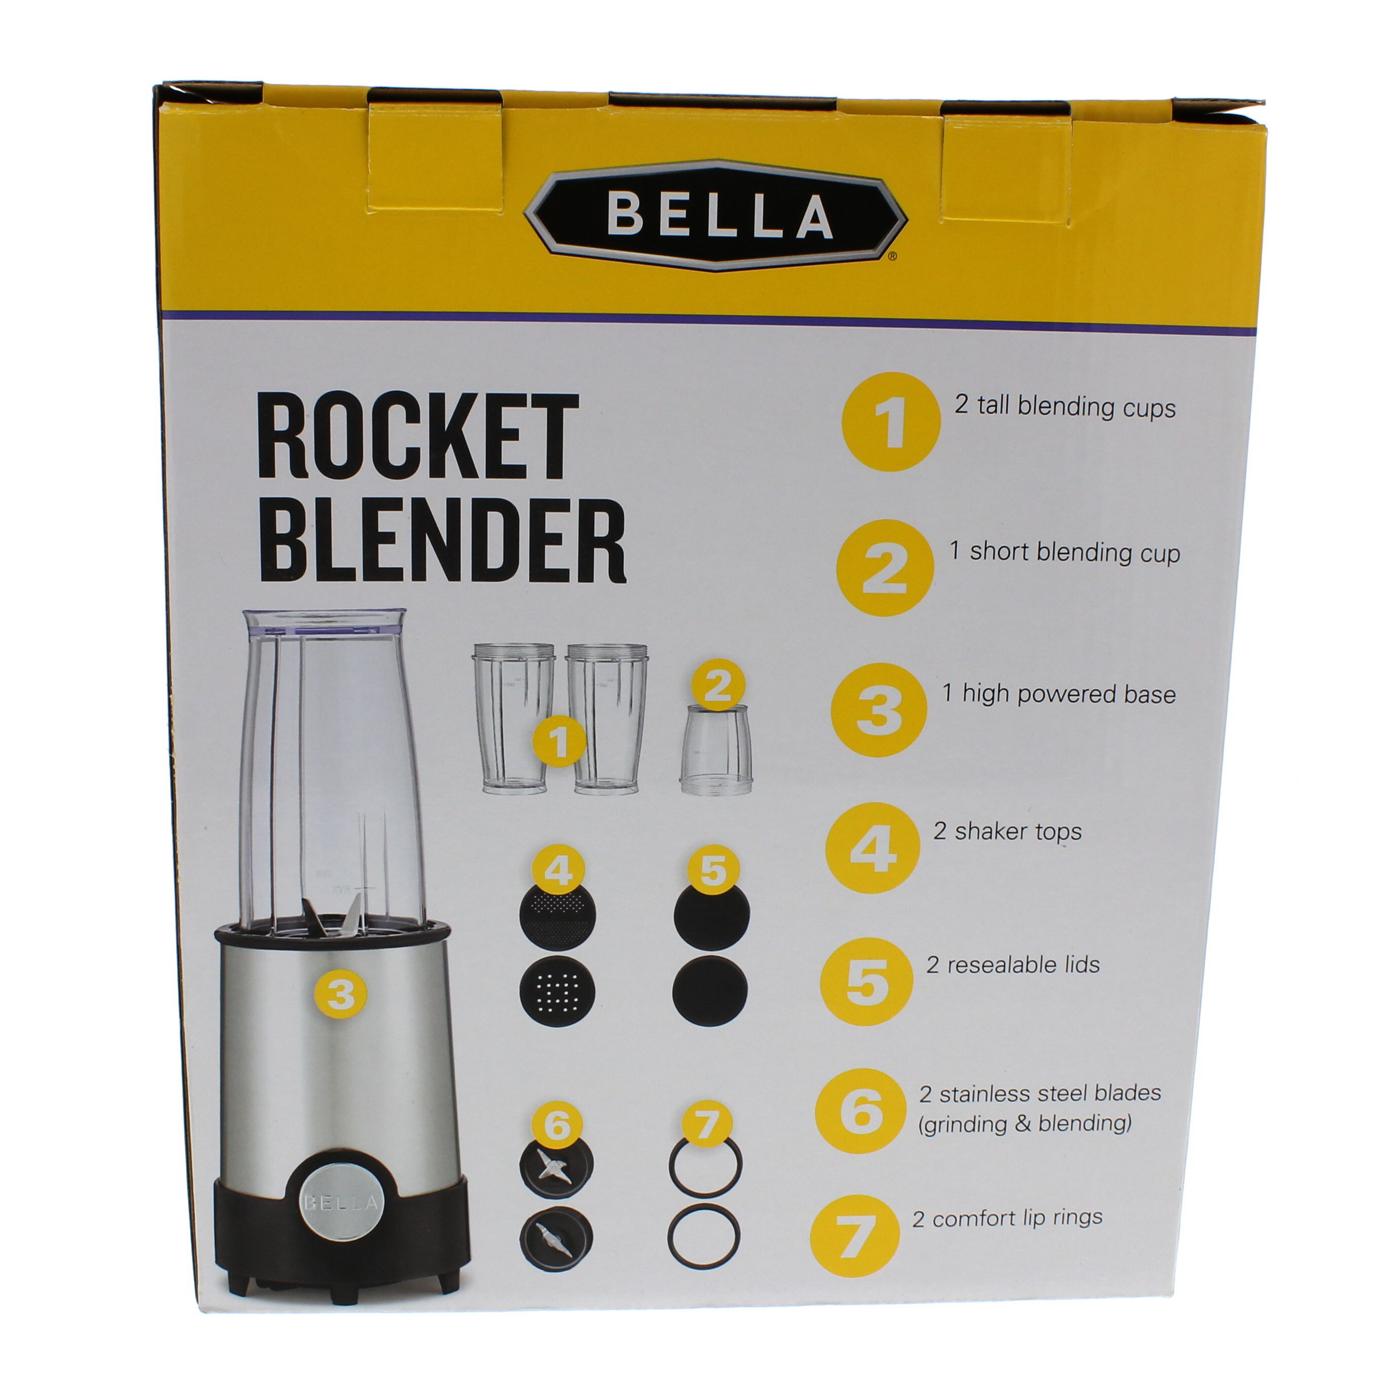 BELLA Rocket Blender Review 